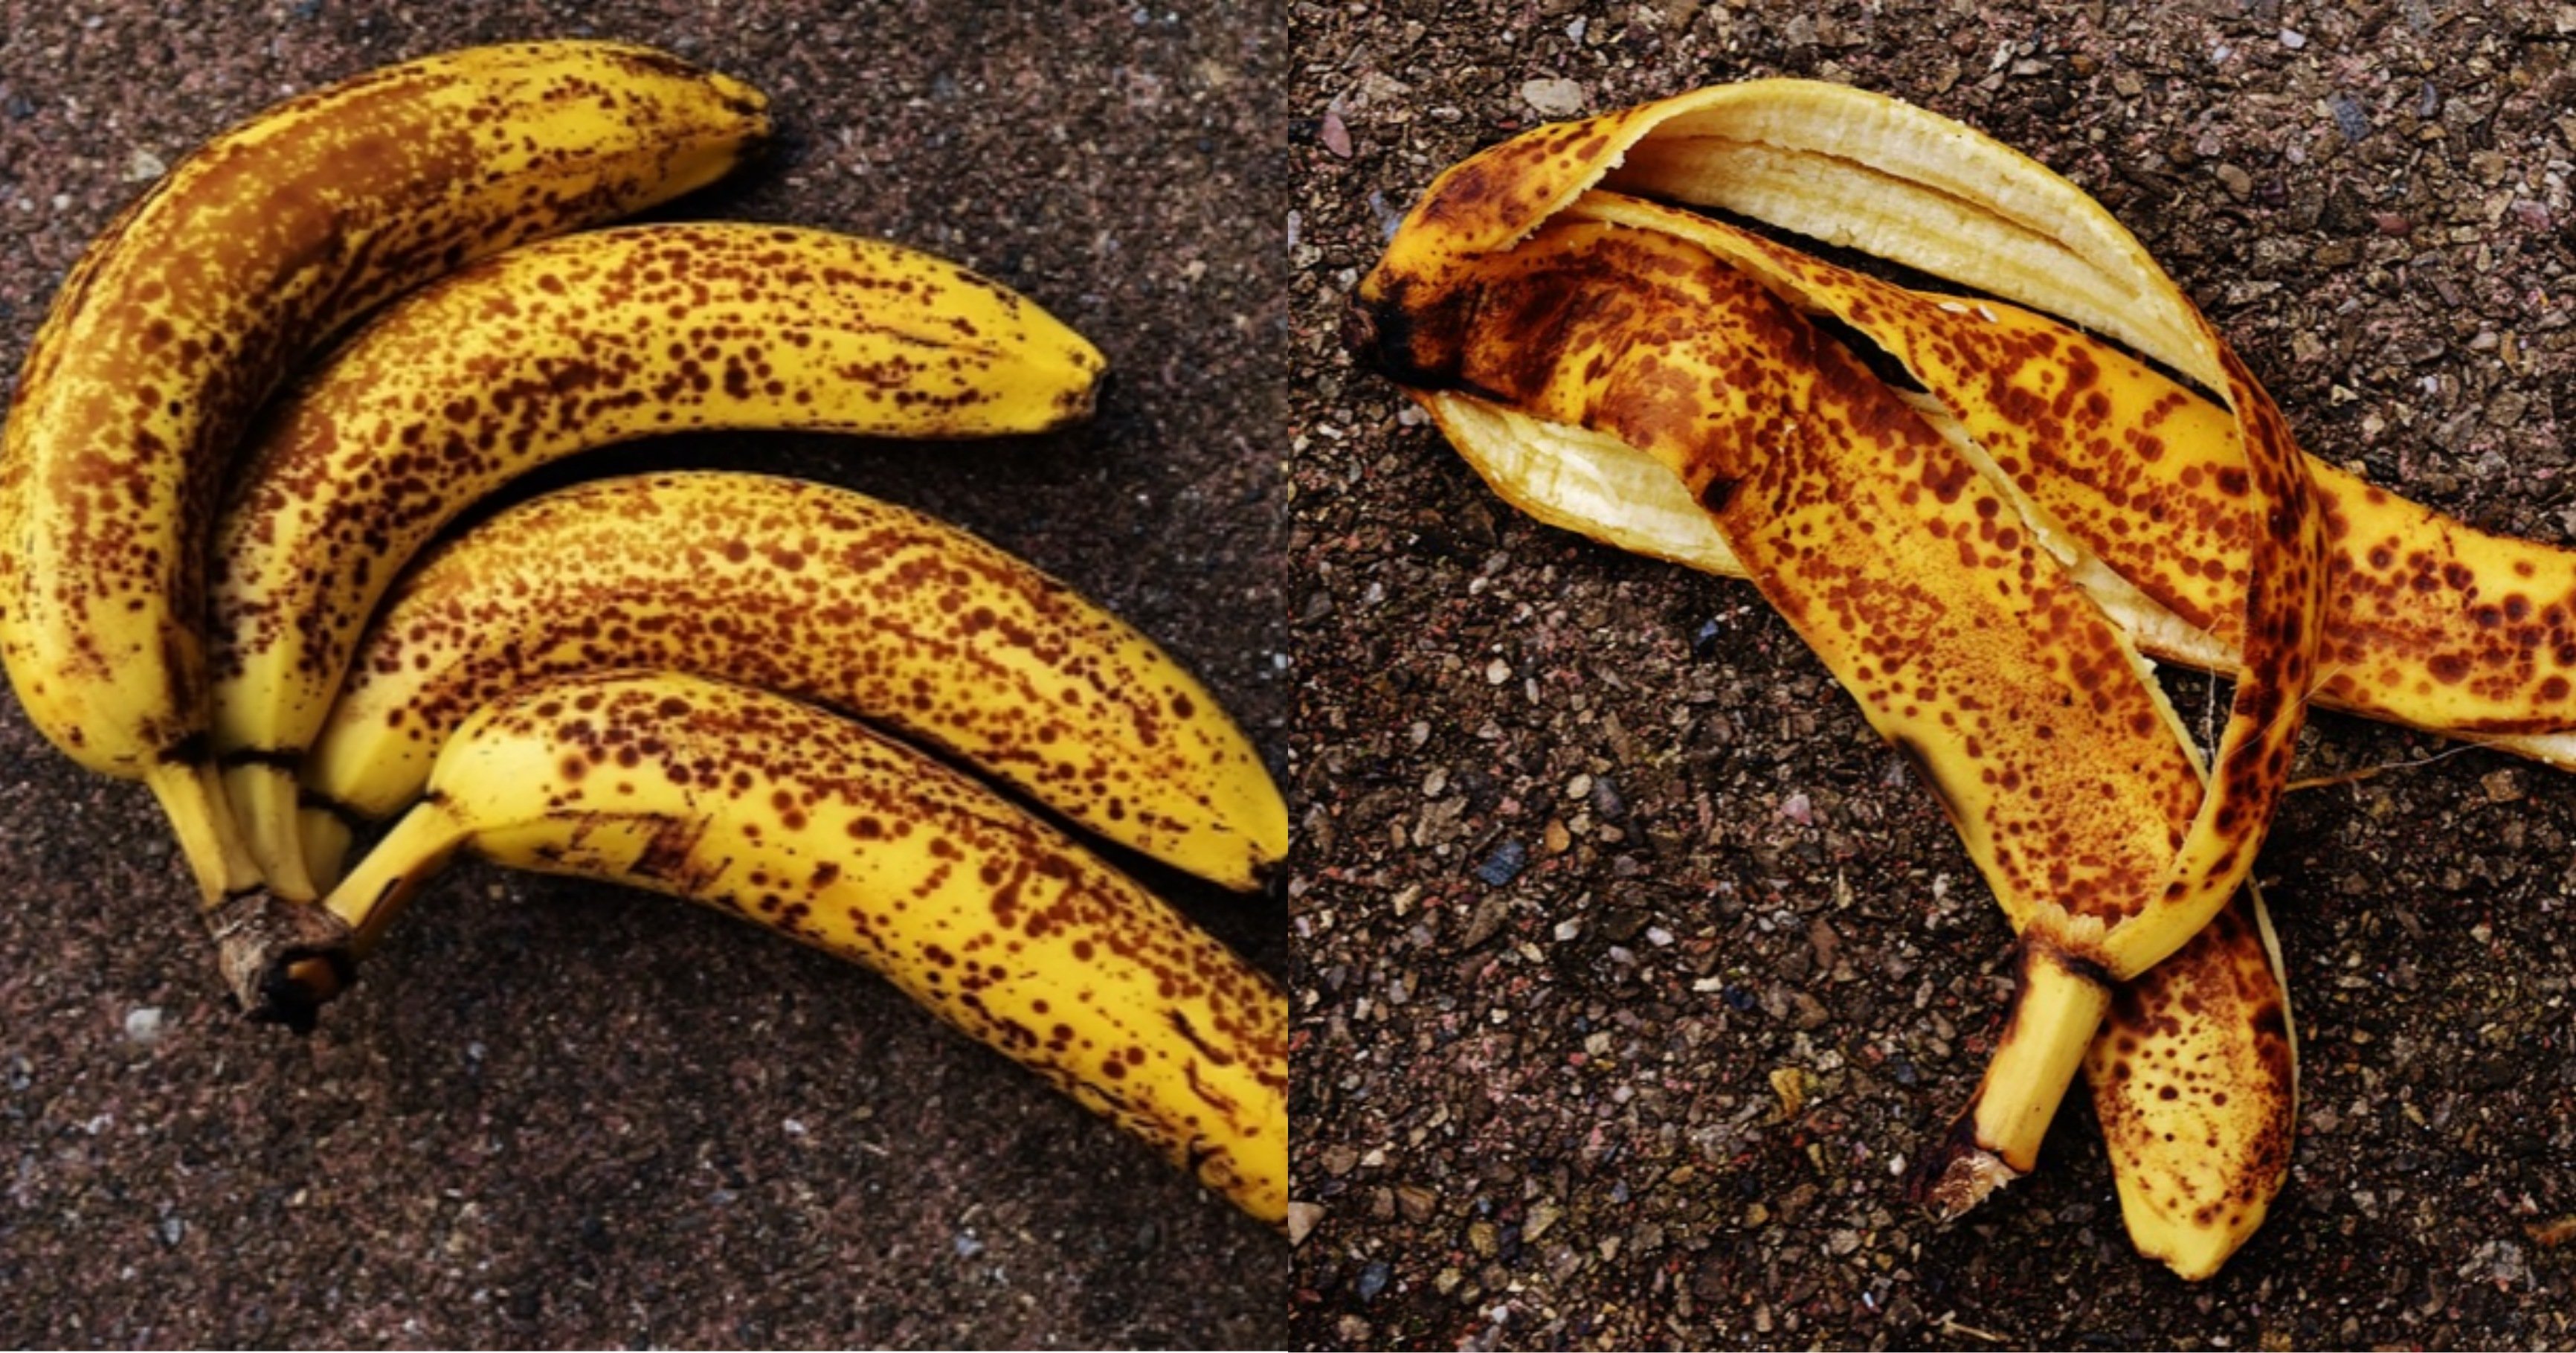 kakaotalk 20211109 222136610.jpg?resize=412,232 - 사람들이 모르고 먹고 있는 '검은 반점이 있는 바나나'를 먹게 되면 우리 몸에 일어나는 변화